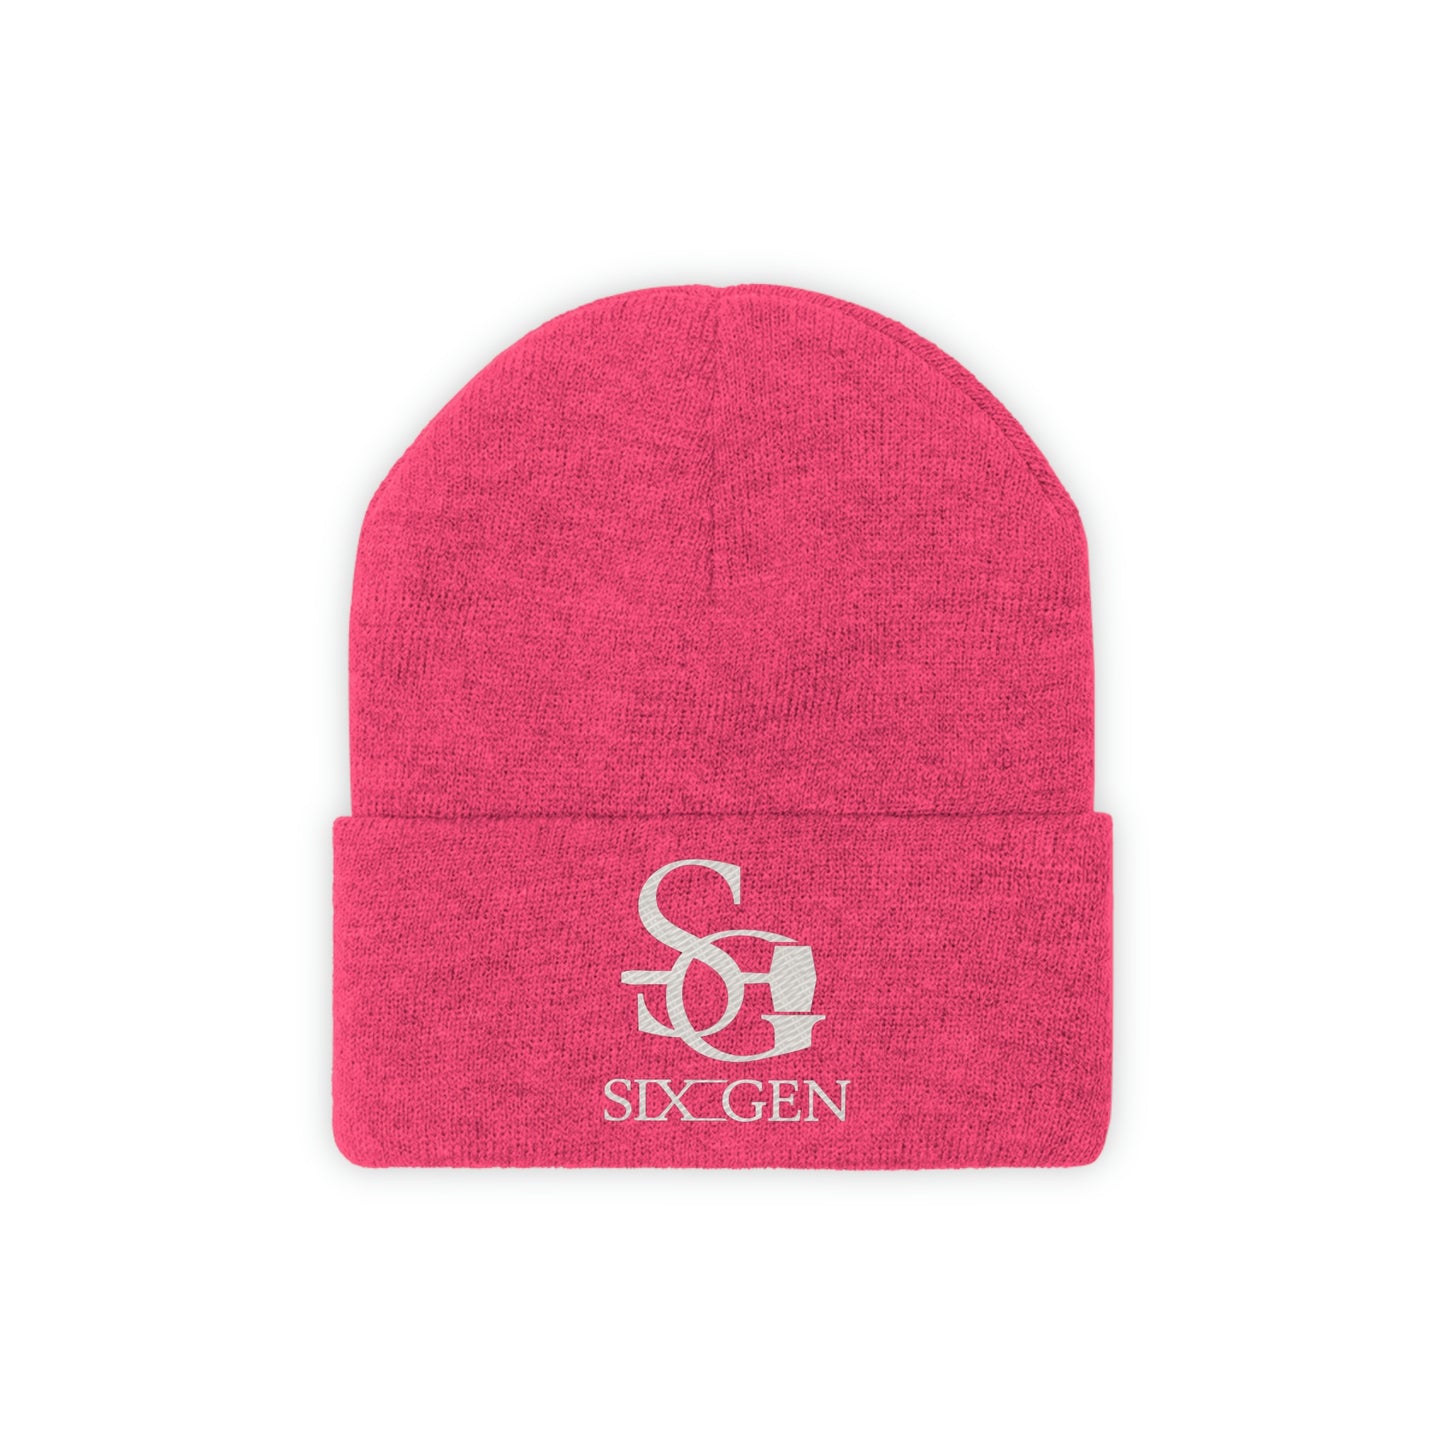 Six-Gen logo knitted hat